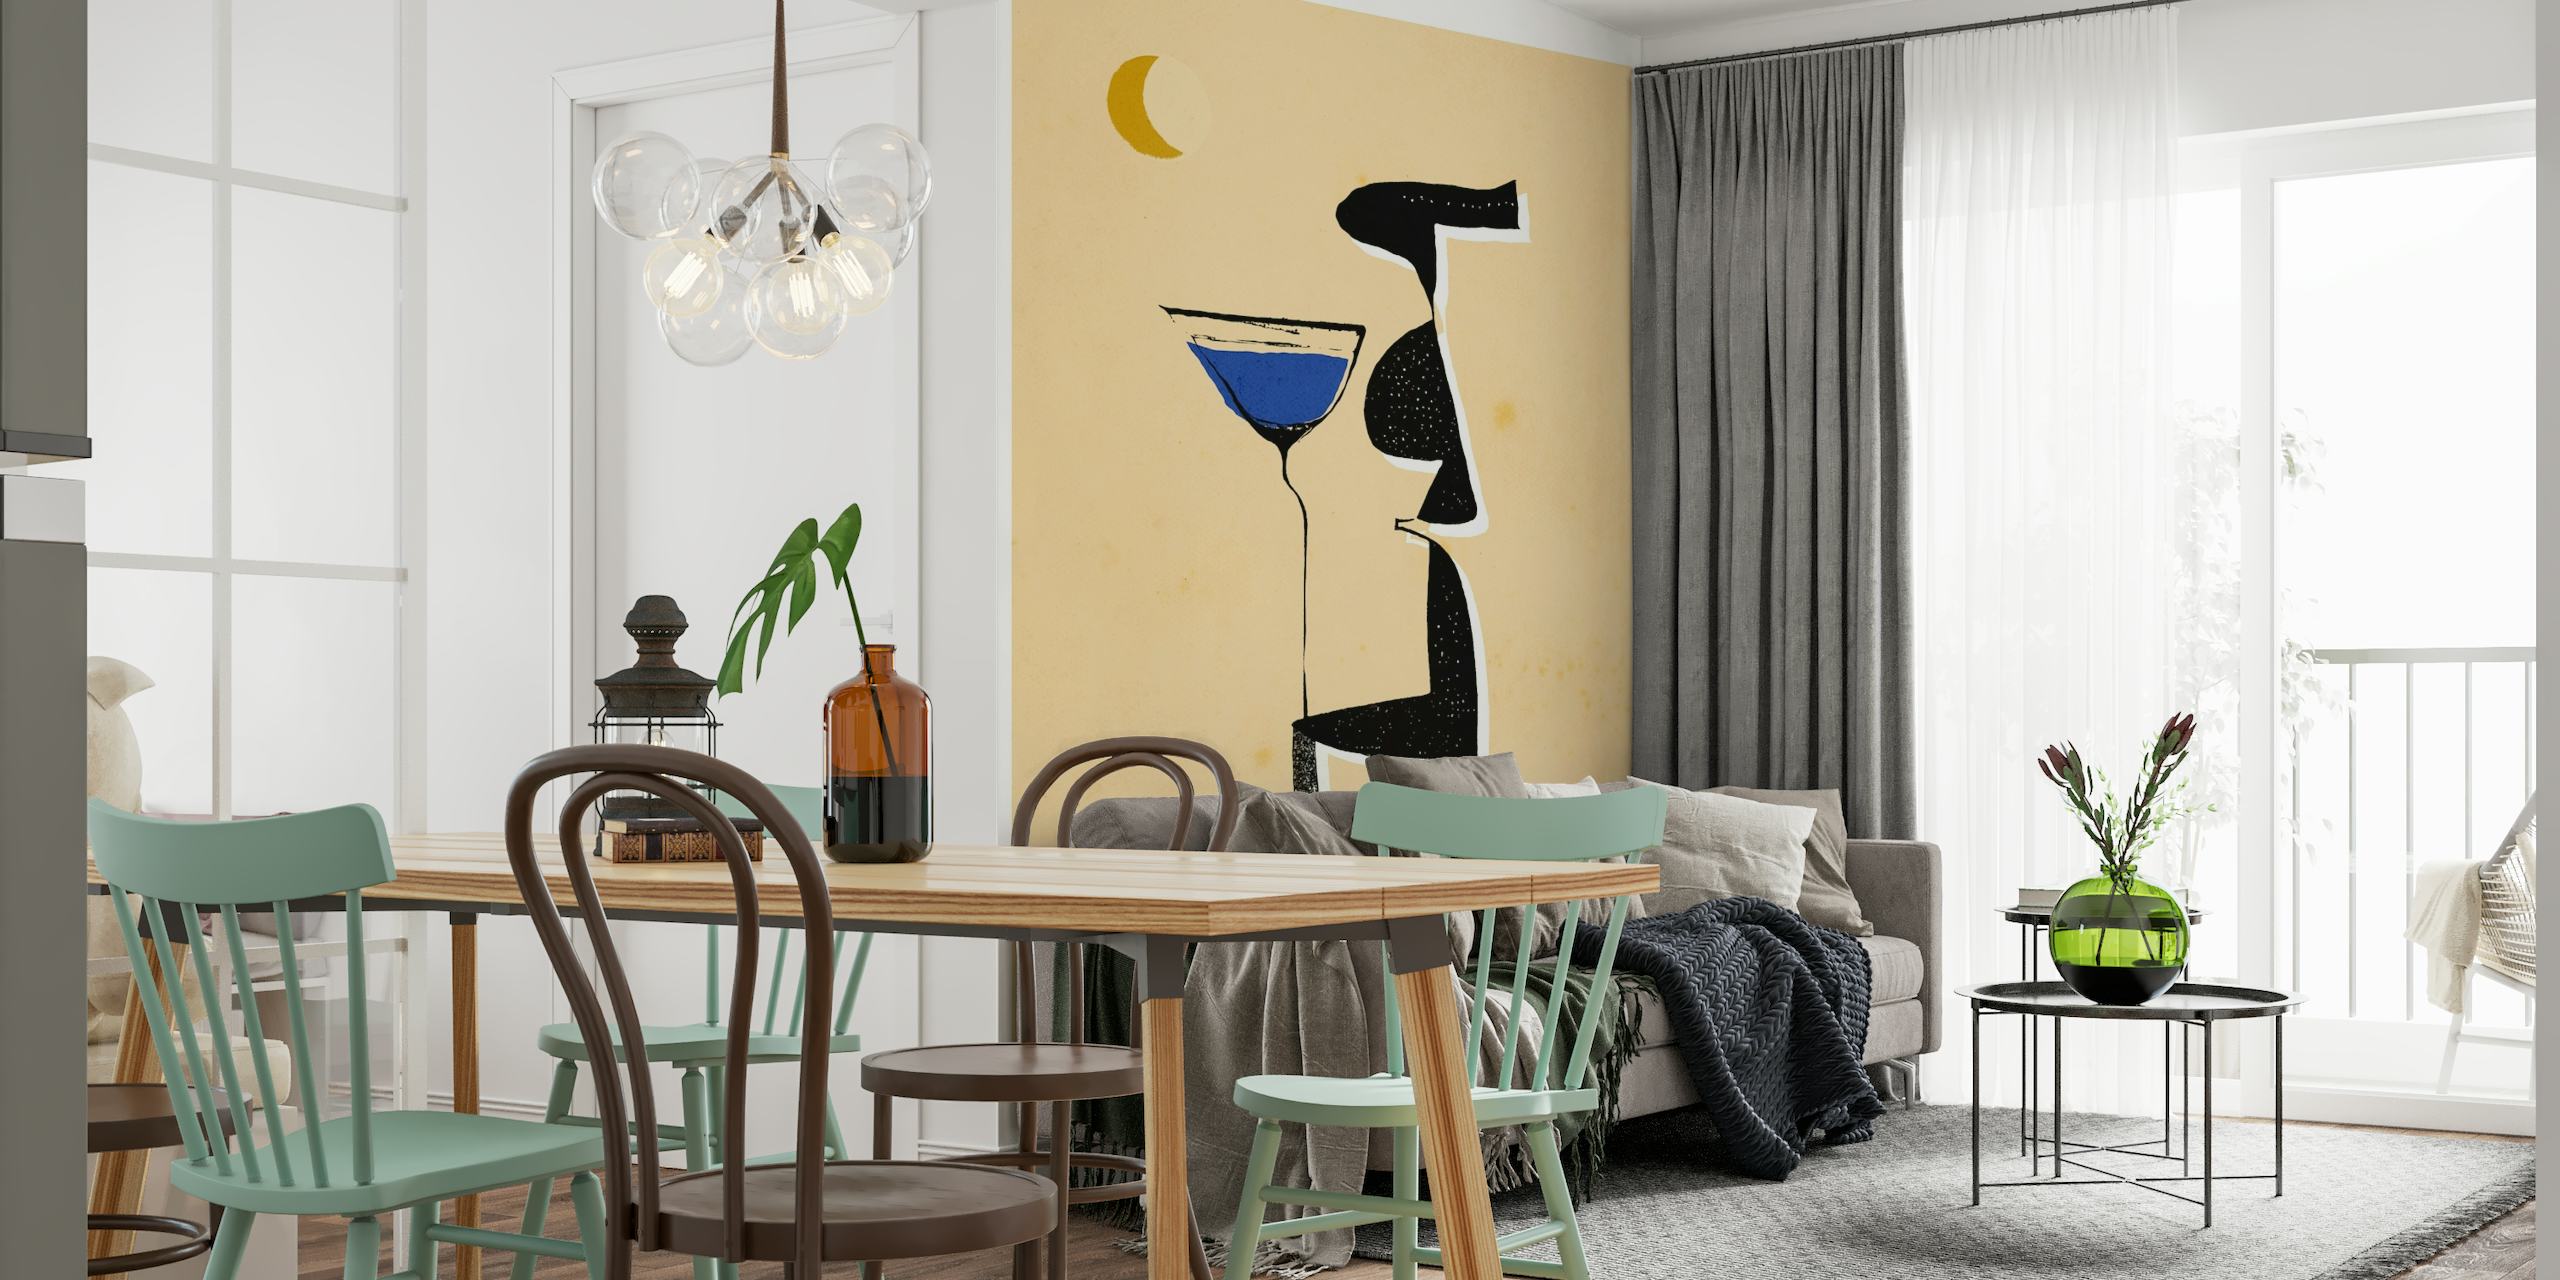 Le Monsieur muurschildering met abstracte figuren met warme tinten, blauw accent en halve maan.